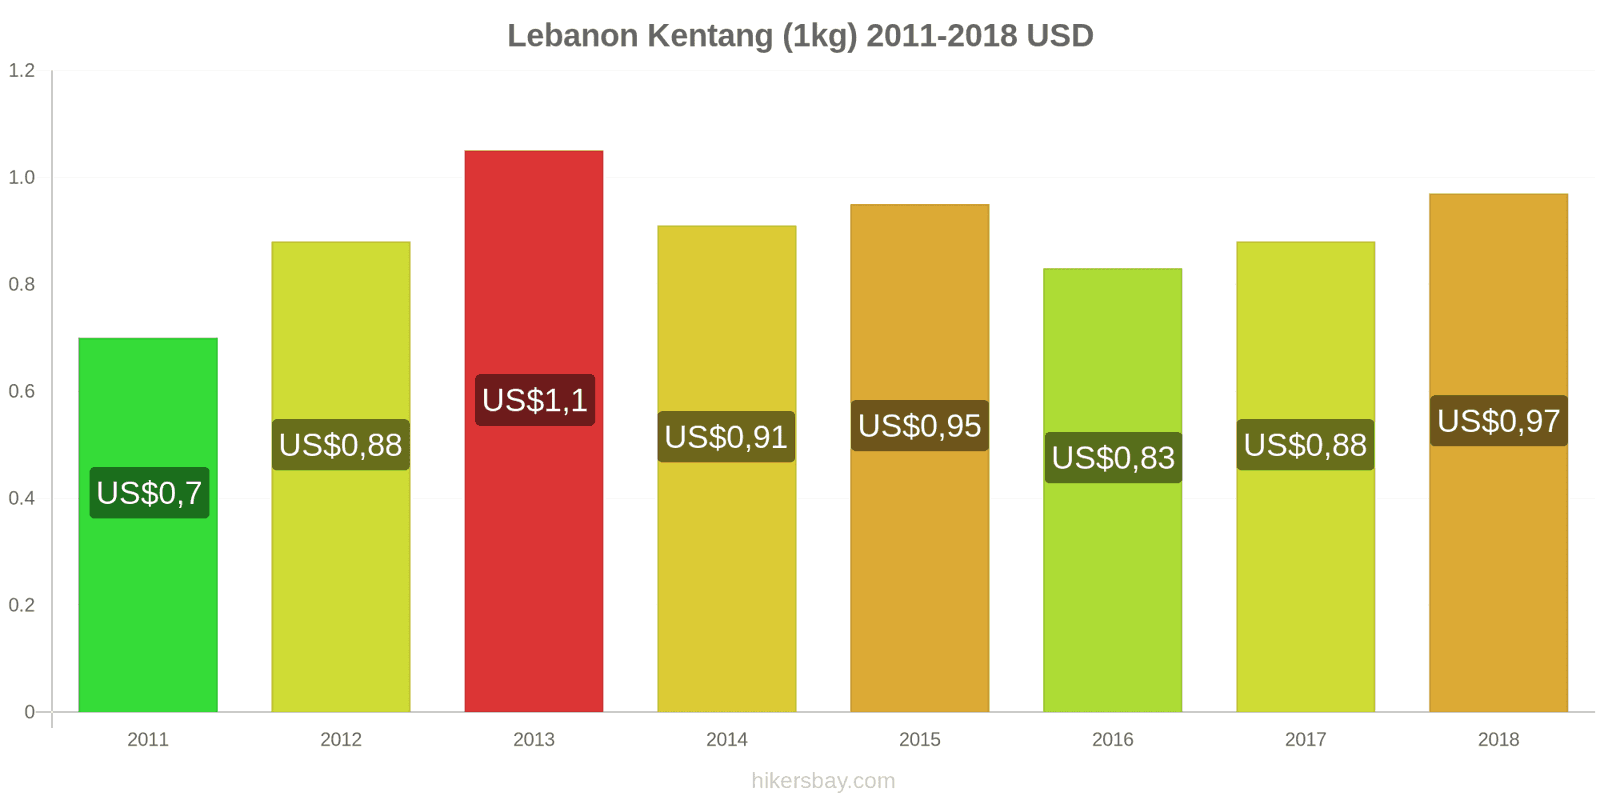 Lebanon perubahan harga Kentang (1kg) hikersbay.com